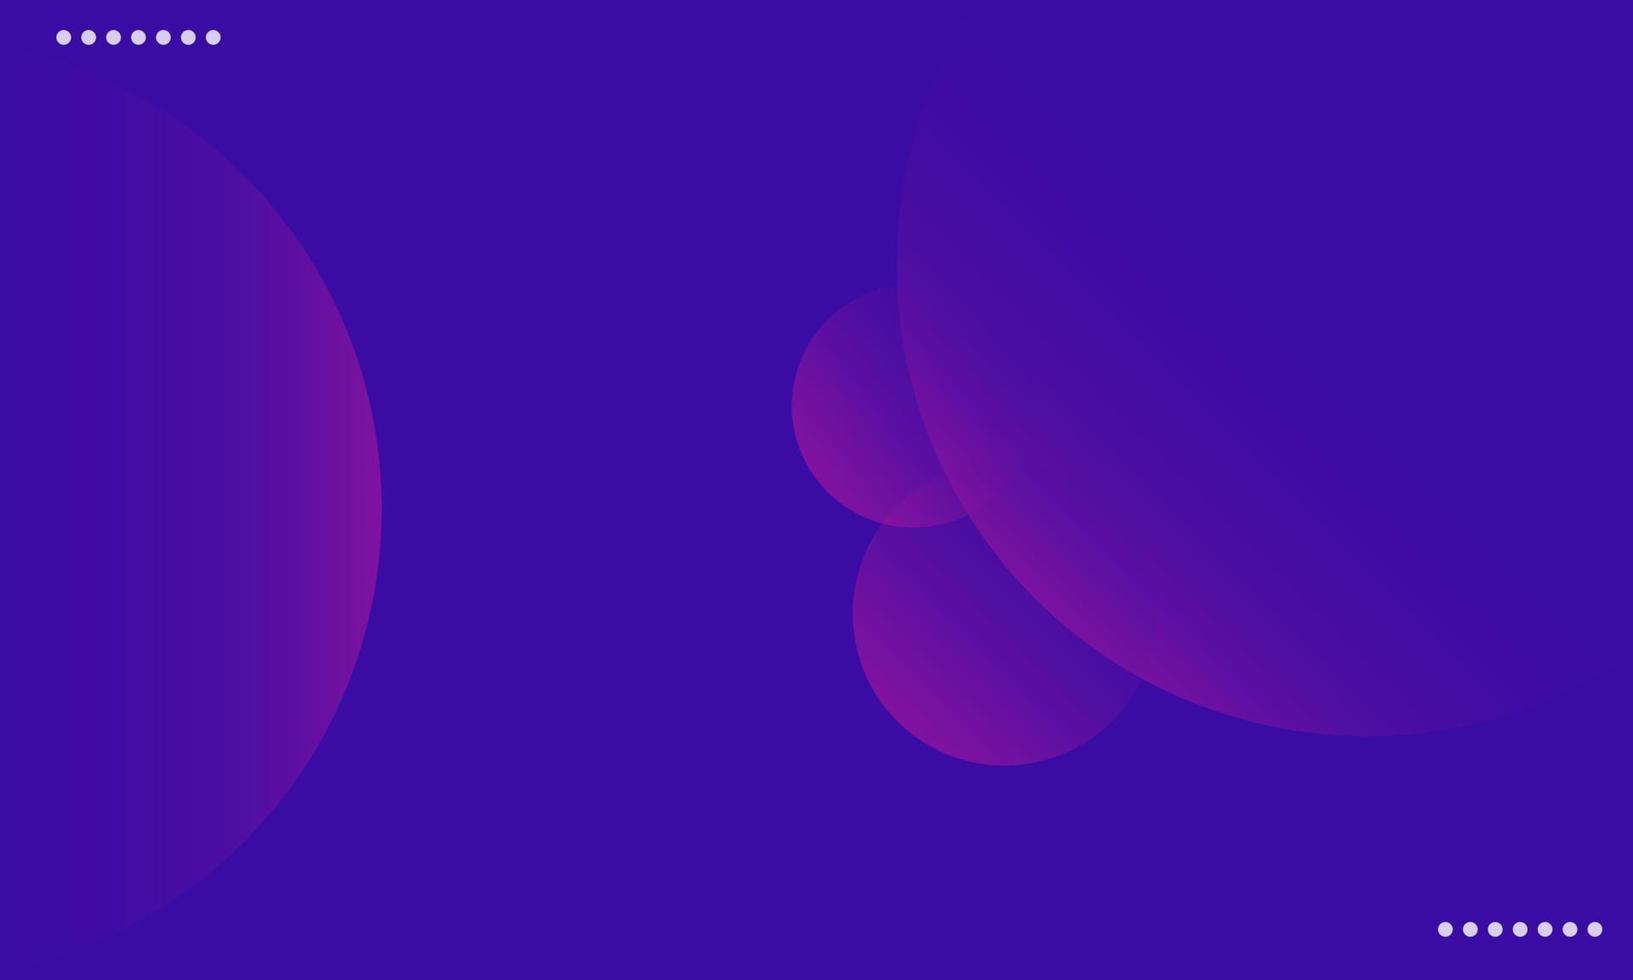 dégradé abstrait rose violet et bleu doux fond multicolore. design horizontal moderne pour les applications mobiles. vecteur eps10